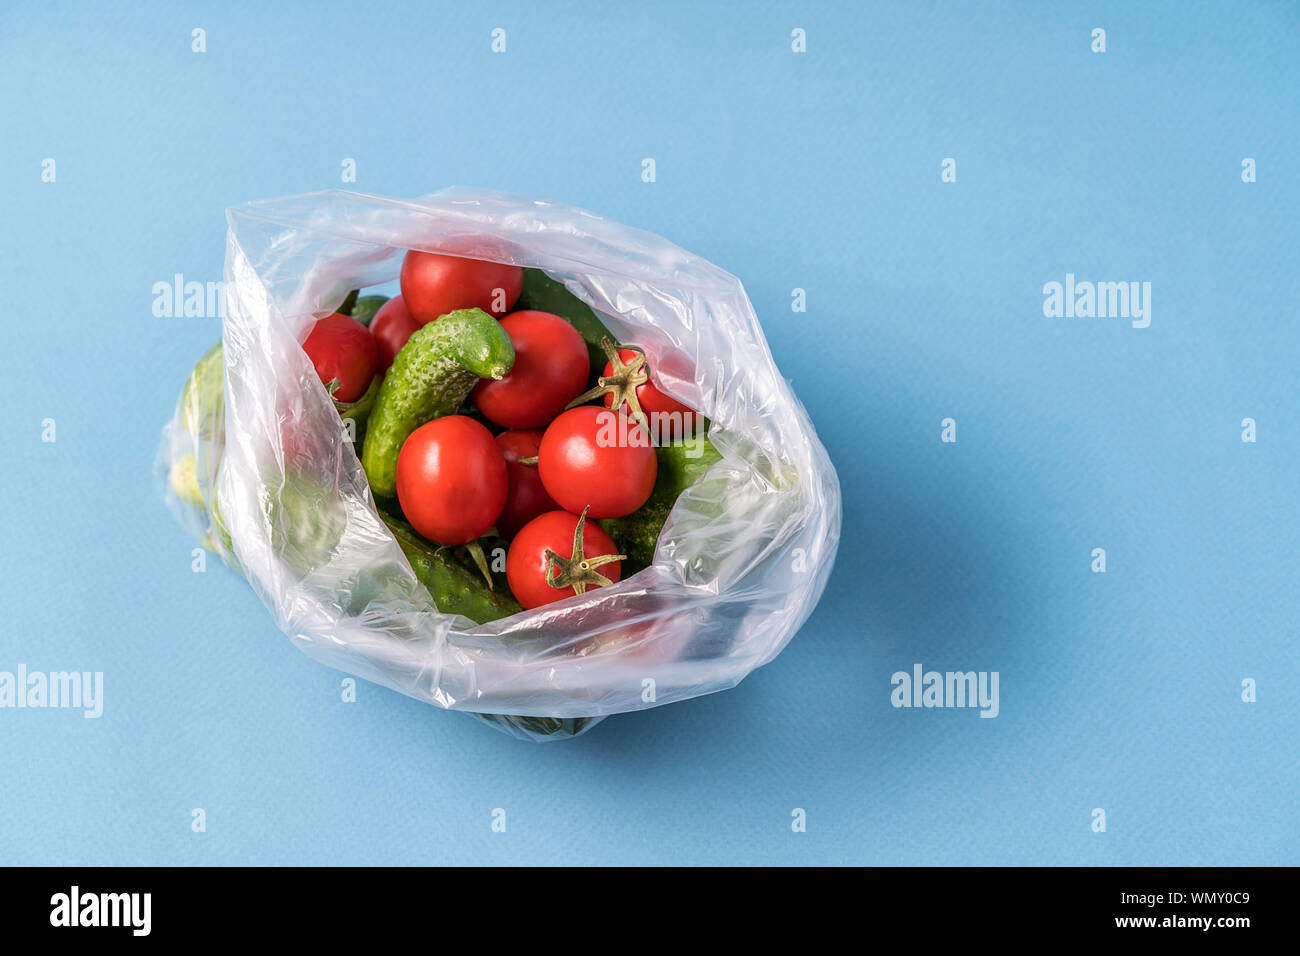 Vue de face des concombres et des tomates dans un sac plastique sur fond bleu. Image montre le harmness à l'aide de sacs de stockage de l'alimentation artificielle. Image horizontale. Banque D'Images